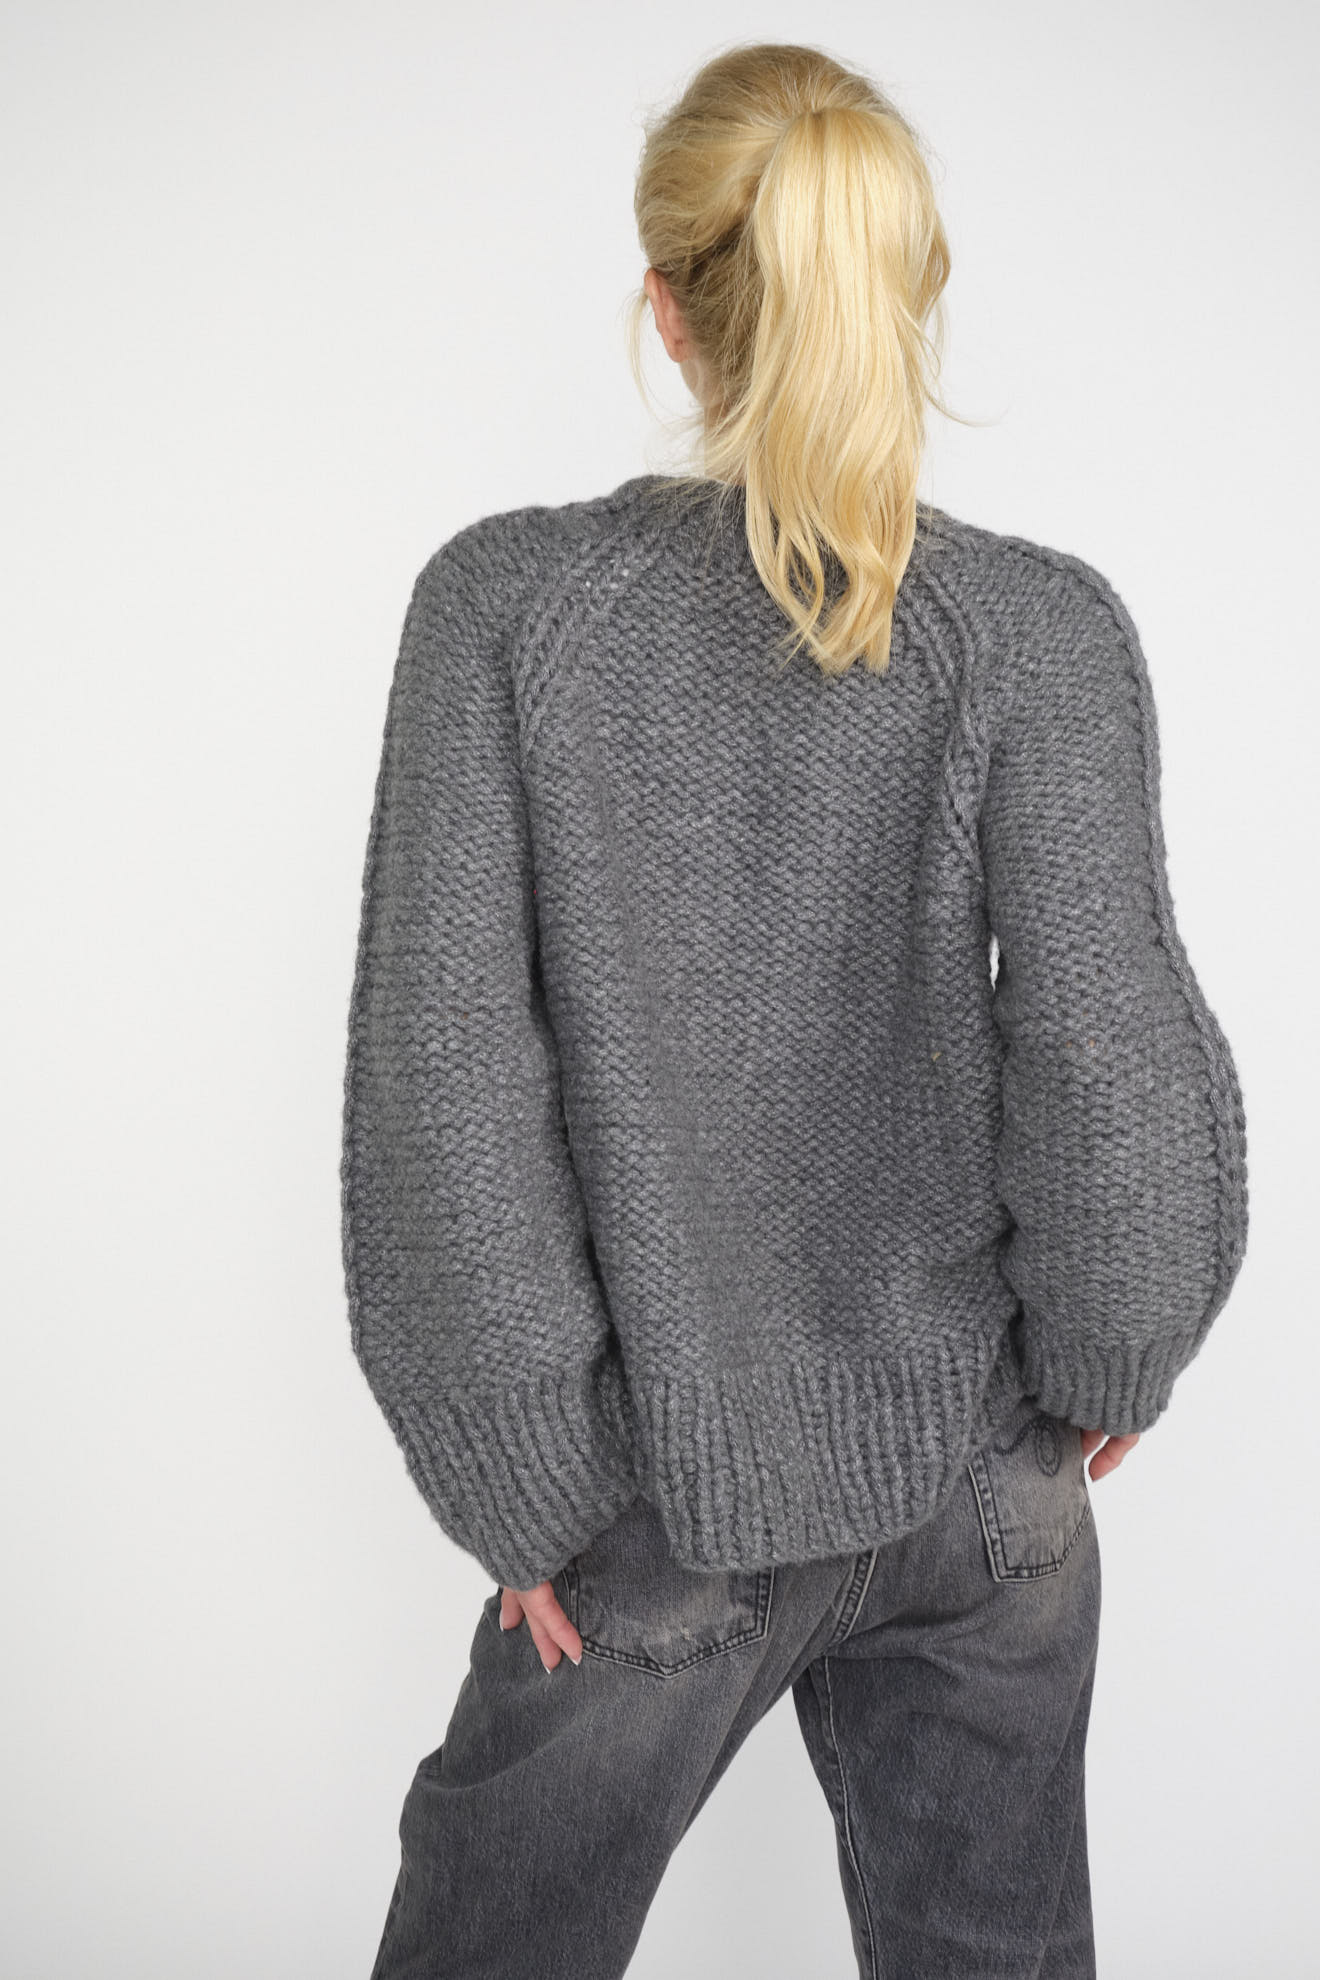 iris von arnim sweater grey plain cashmere